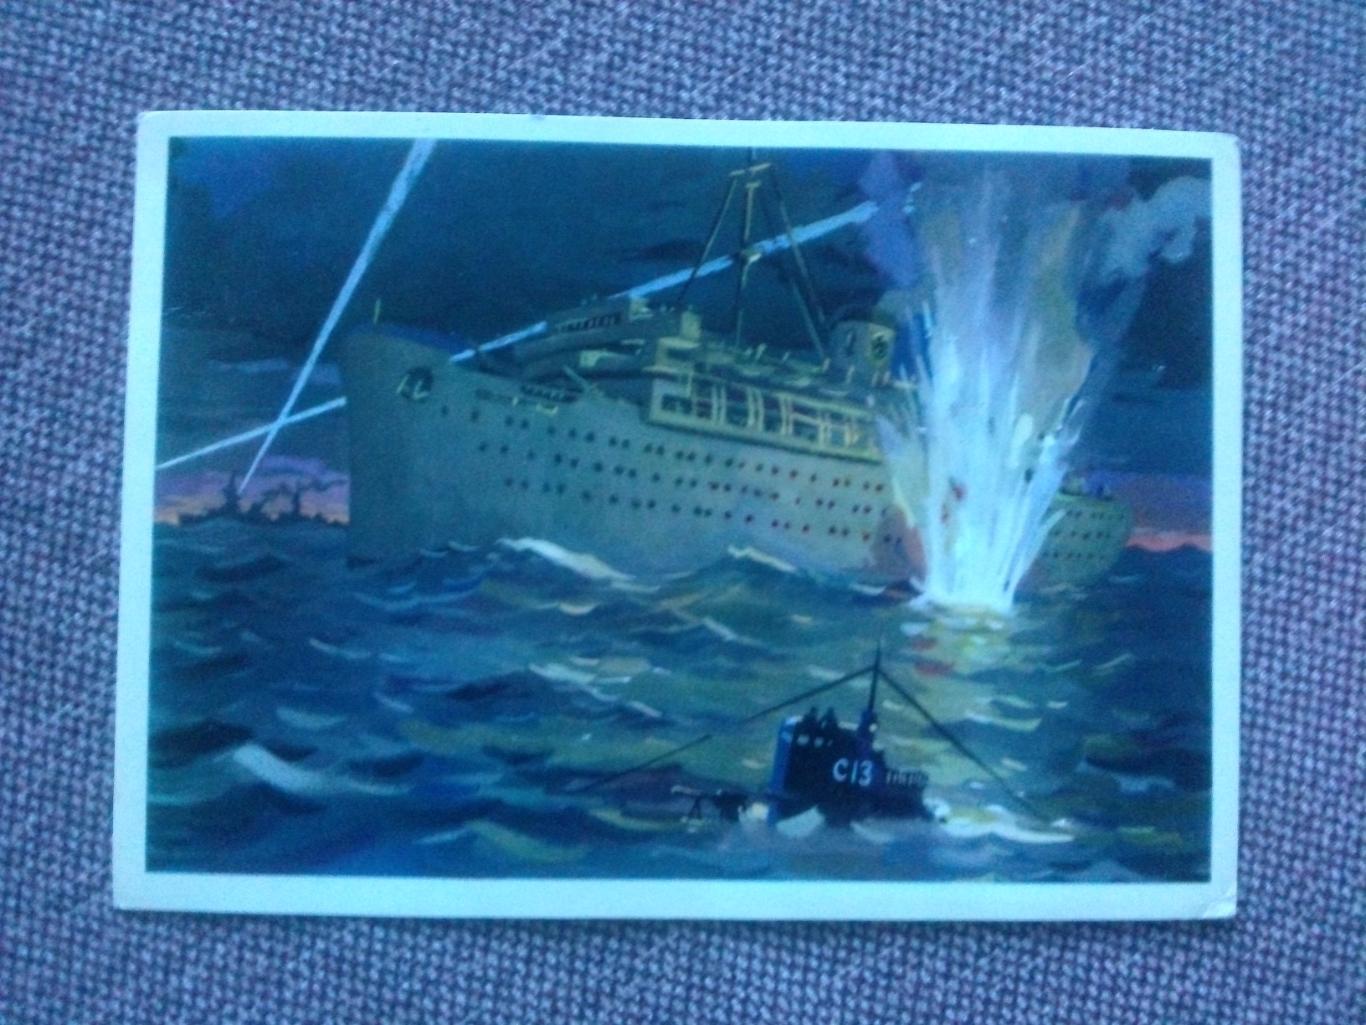 Уничтожение фашисткого лайнера Вильгельм Густлов 1976 г. Война на море Флот